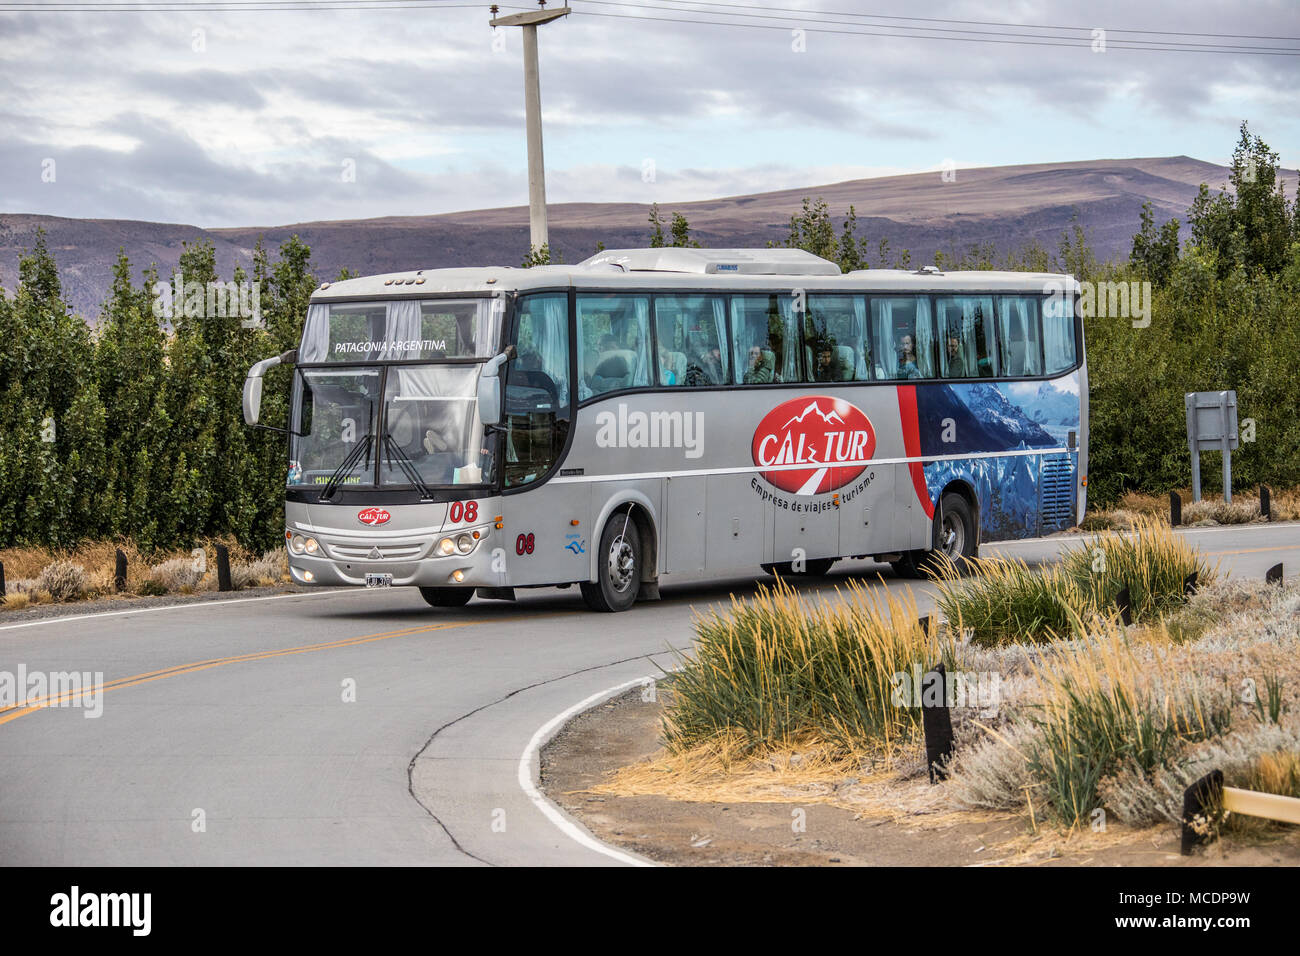 Cal Tur autobus turistico, El Calafate, Argentina Foto Stock